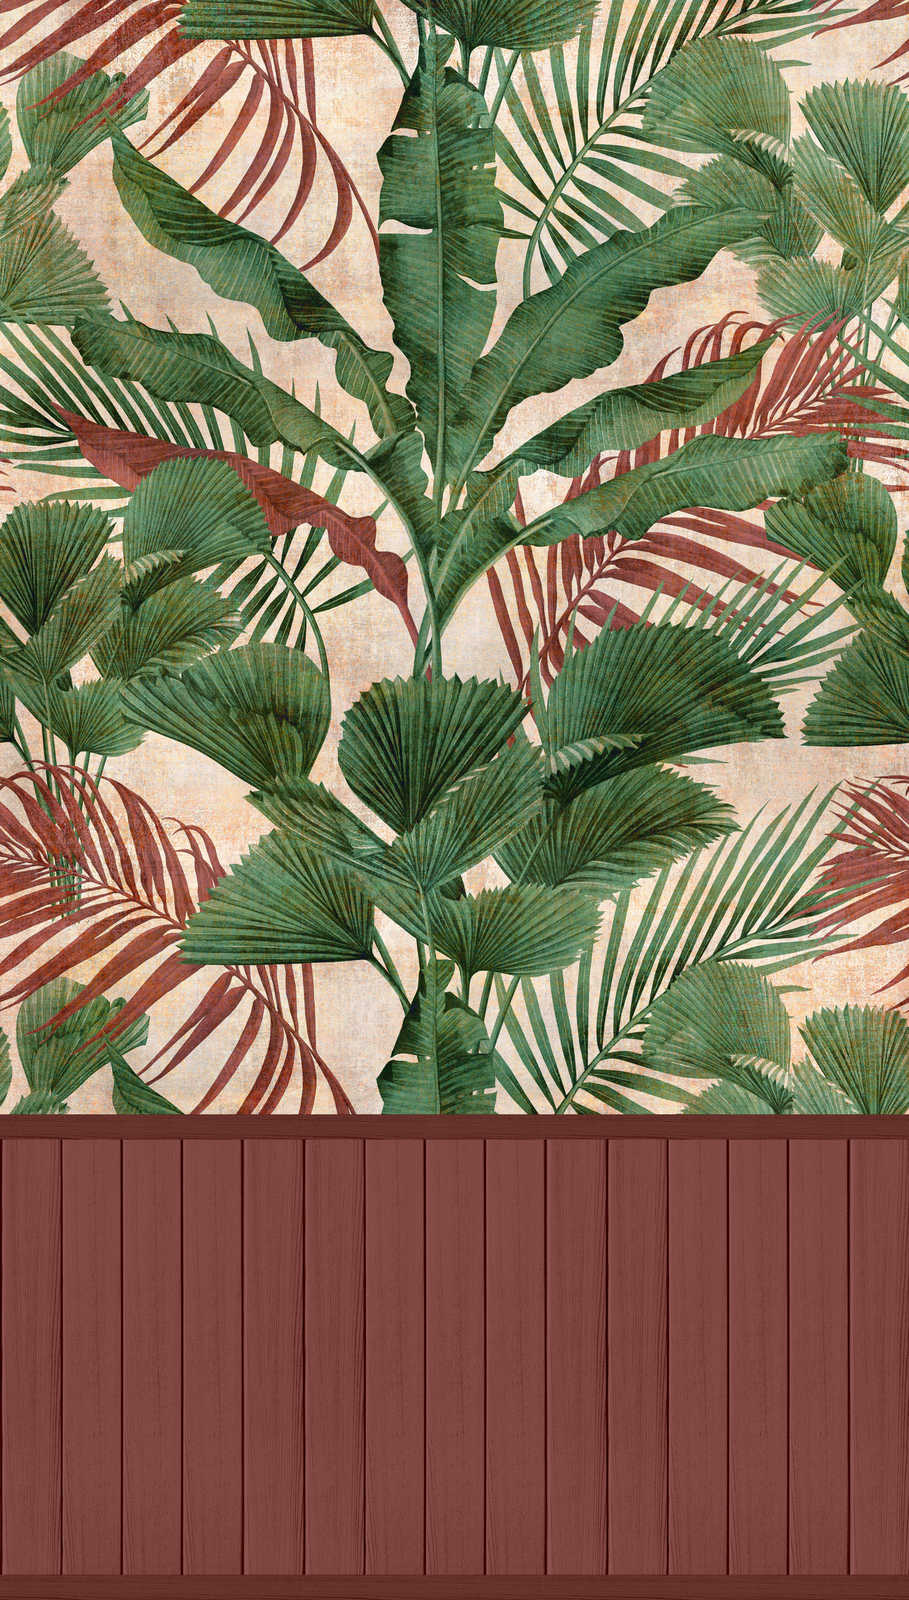             papier peint en papier intissé à motifs avec bordure de plinthe imitation bois et motif jungle - rouge, vert, beige
        